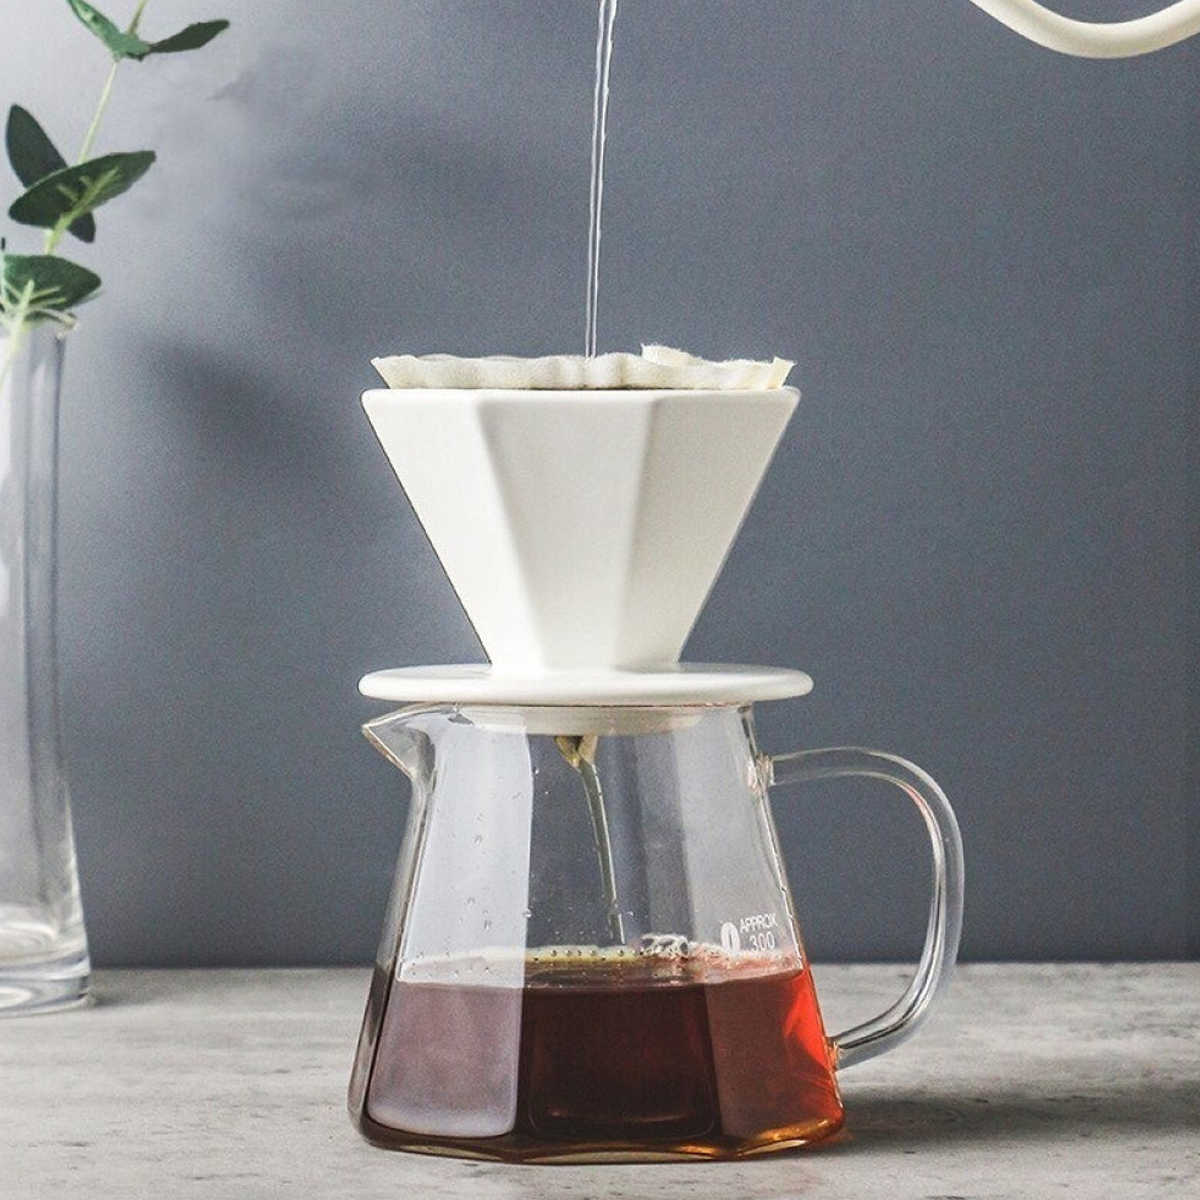 Barista Ceramic Coffee Filter Cup Driper 1-2 cups & 3-4 cups